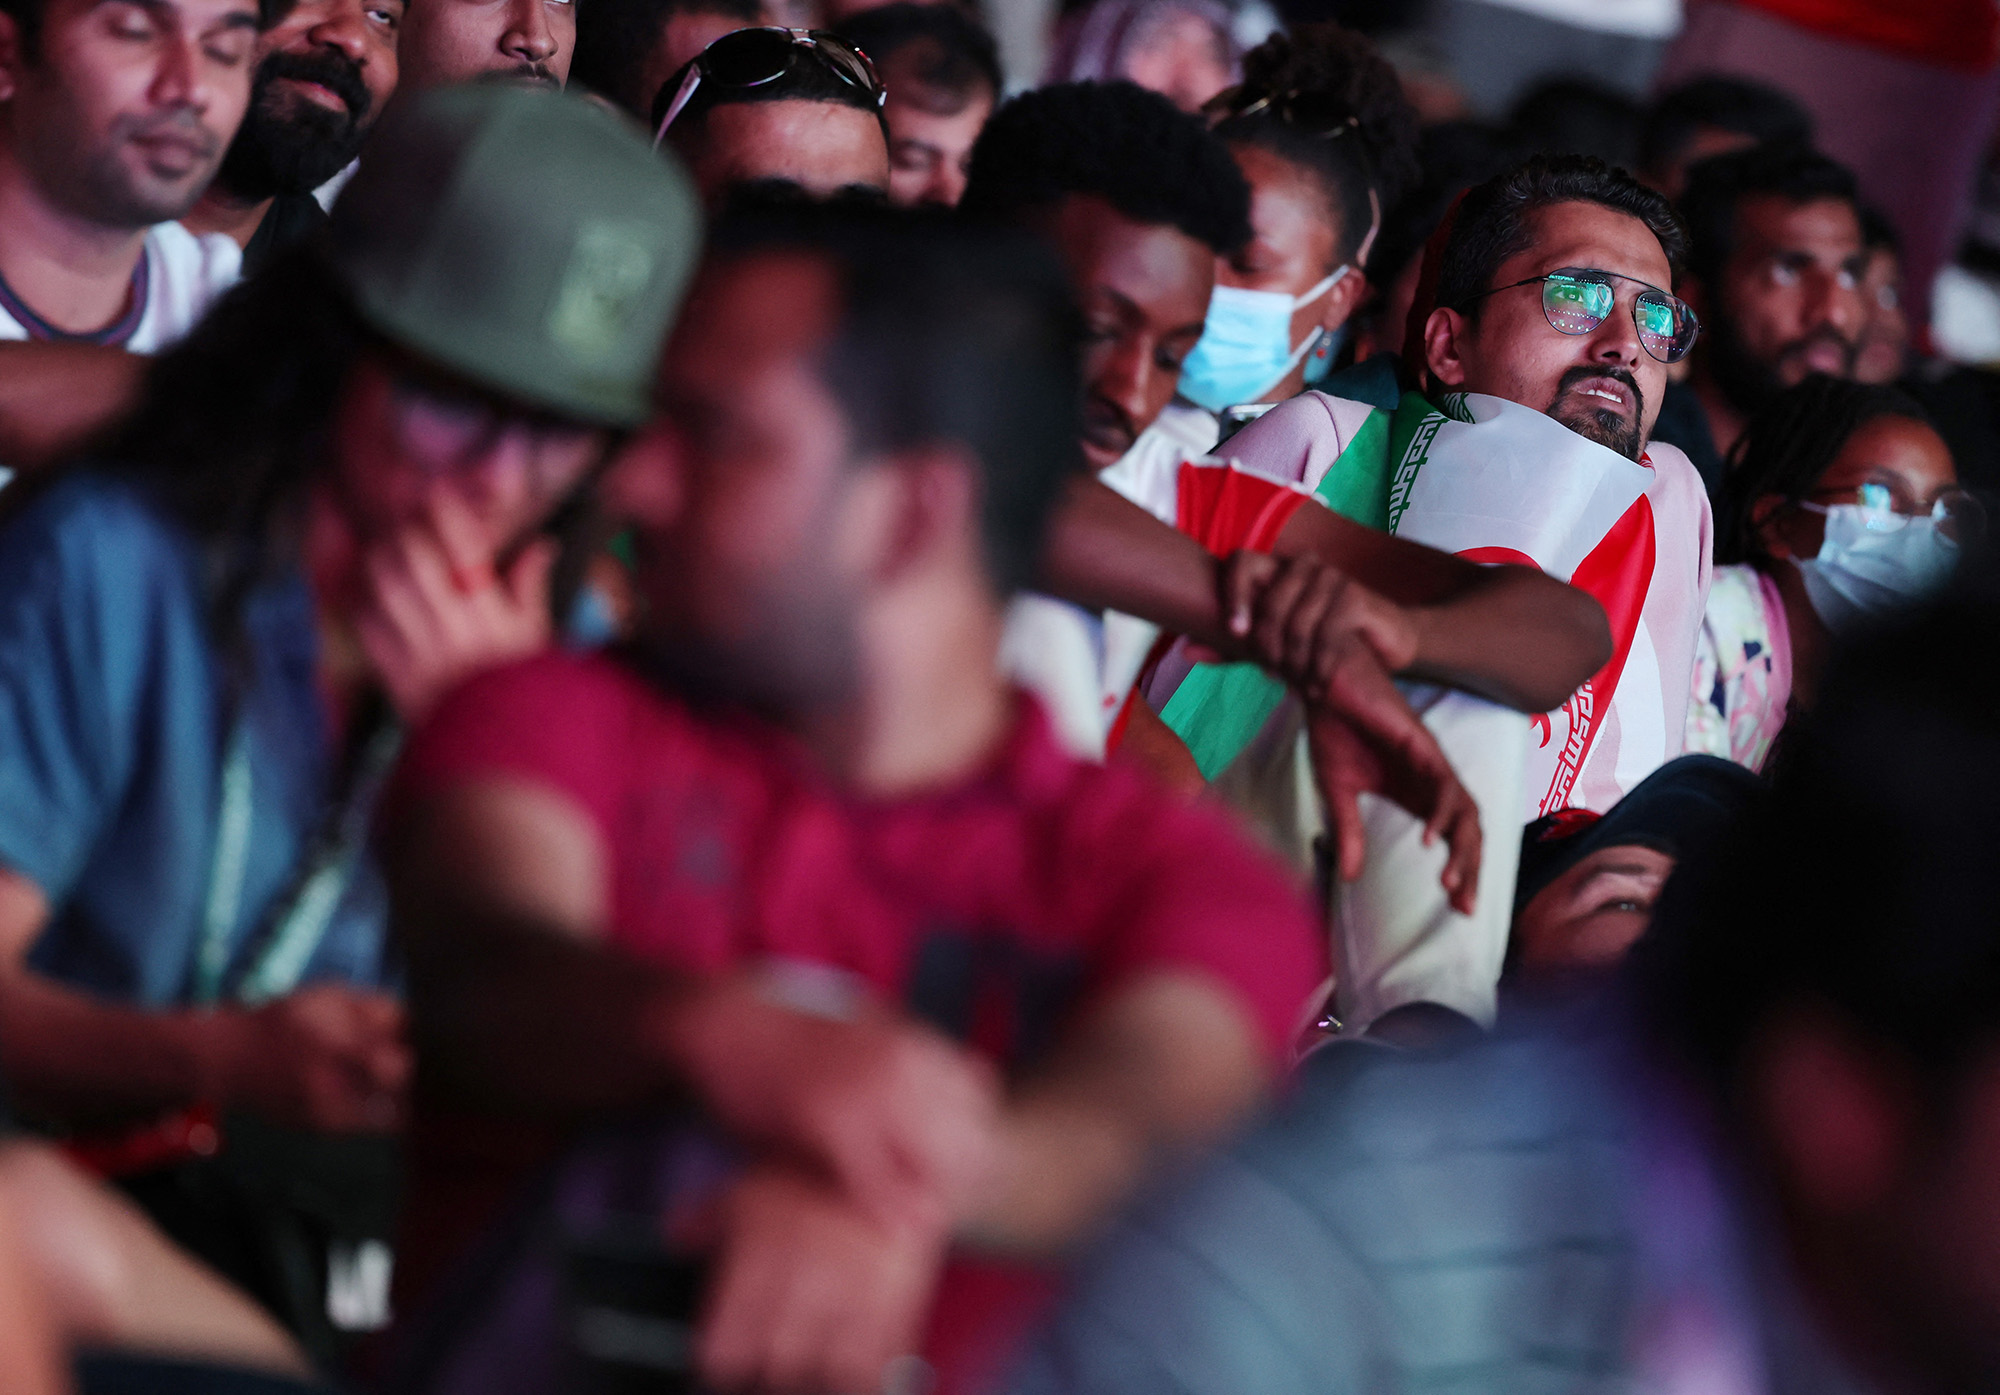 Iran fans are seen during the match between England and Iran at the FIFA Fan Festival at Al Bidda Park, Doha, Qatar, on November 21.